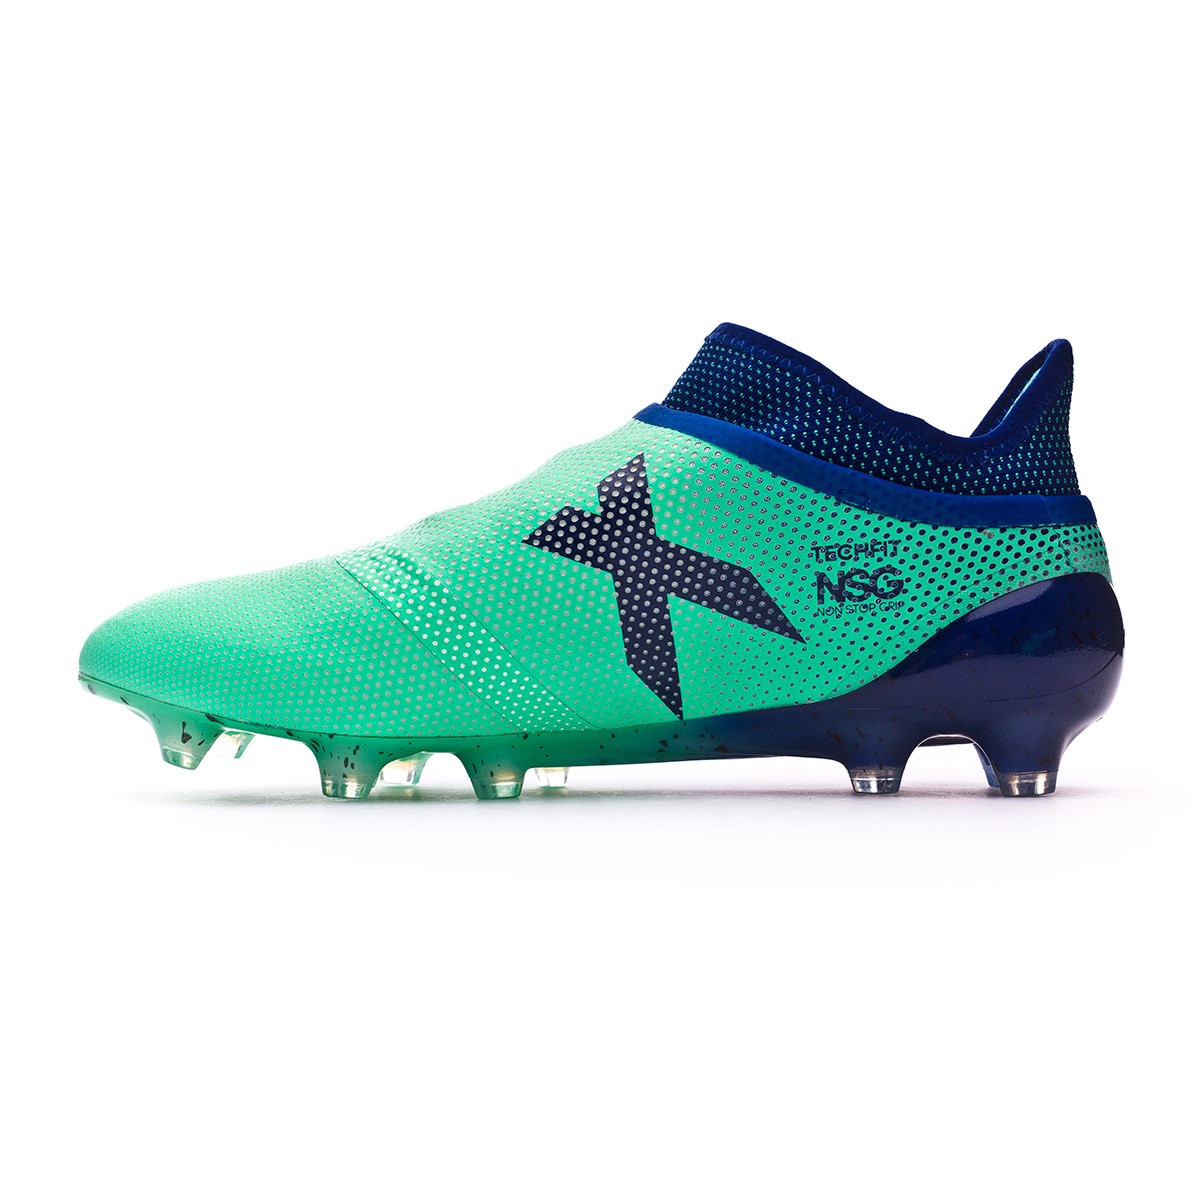 Bota de fútbol adidas X 17+ Purespeed FG Aero green-Unity ink-Hi-res green  - Tienda de fútbol Fútbol Emotion